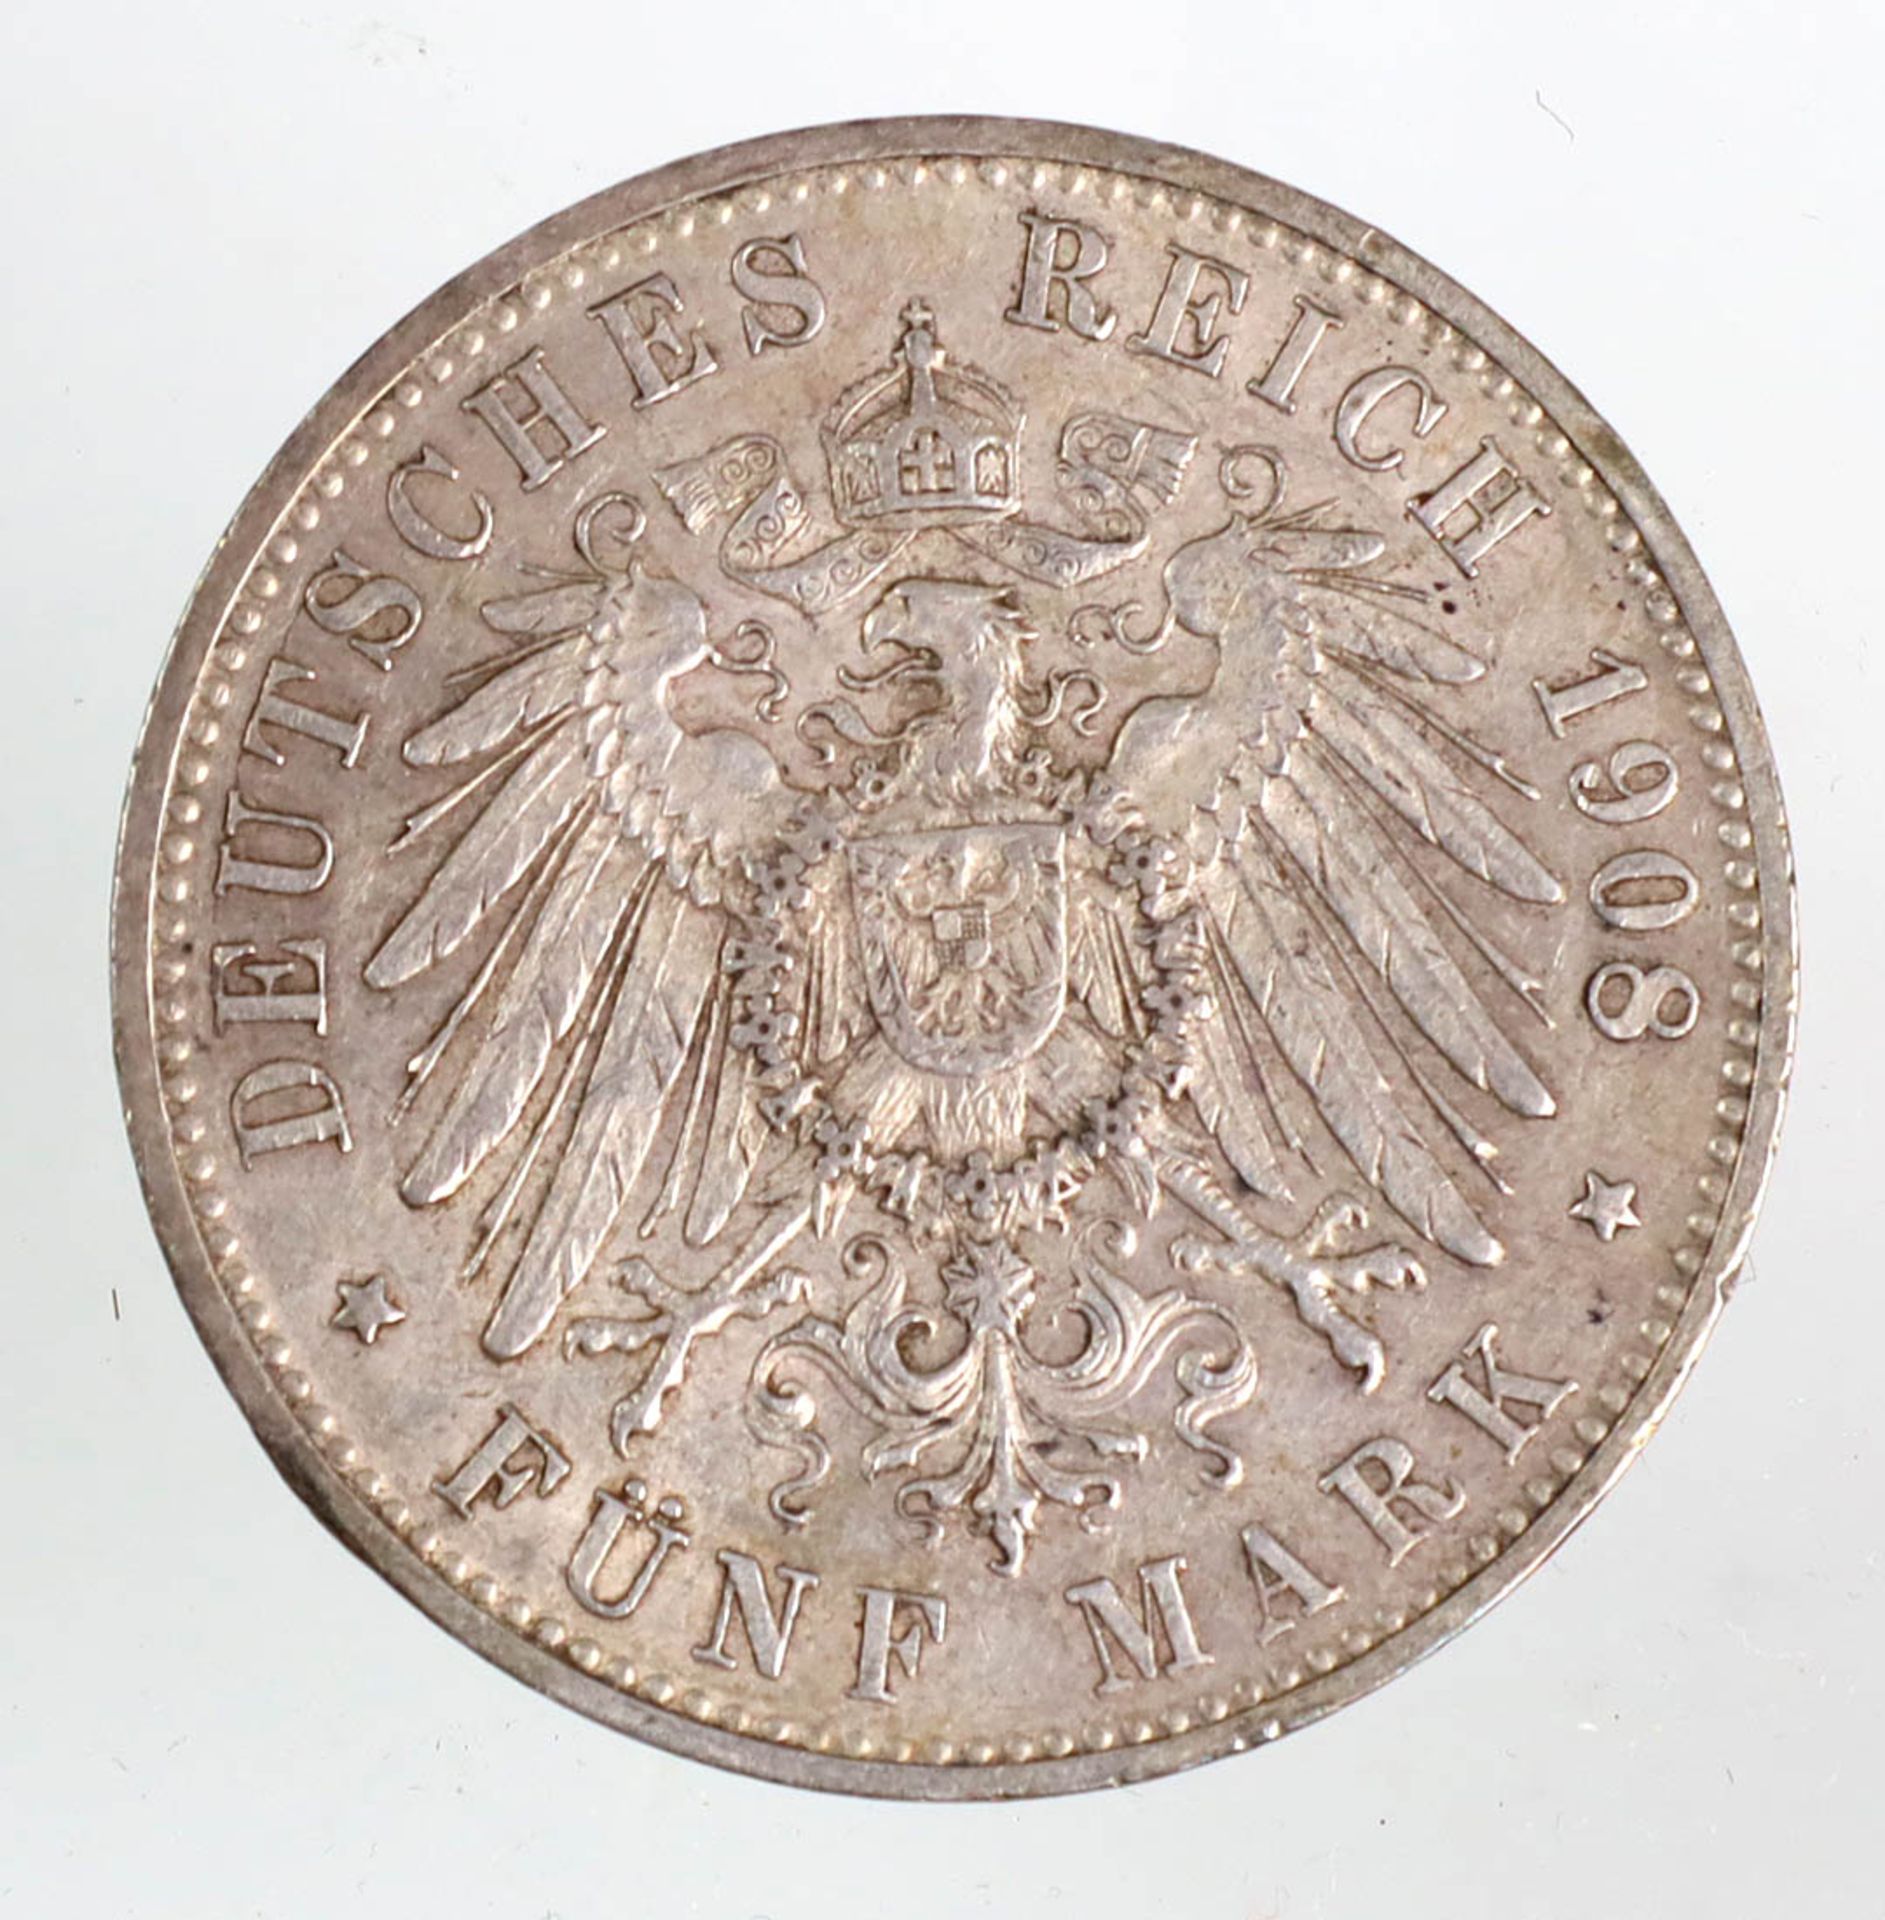 5 Mark Wilhelm II von Württemberg 1908 FSilbermünze Fünf Mark Deutsches Reich 1908, - Image 2 of 2